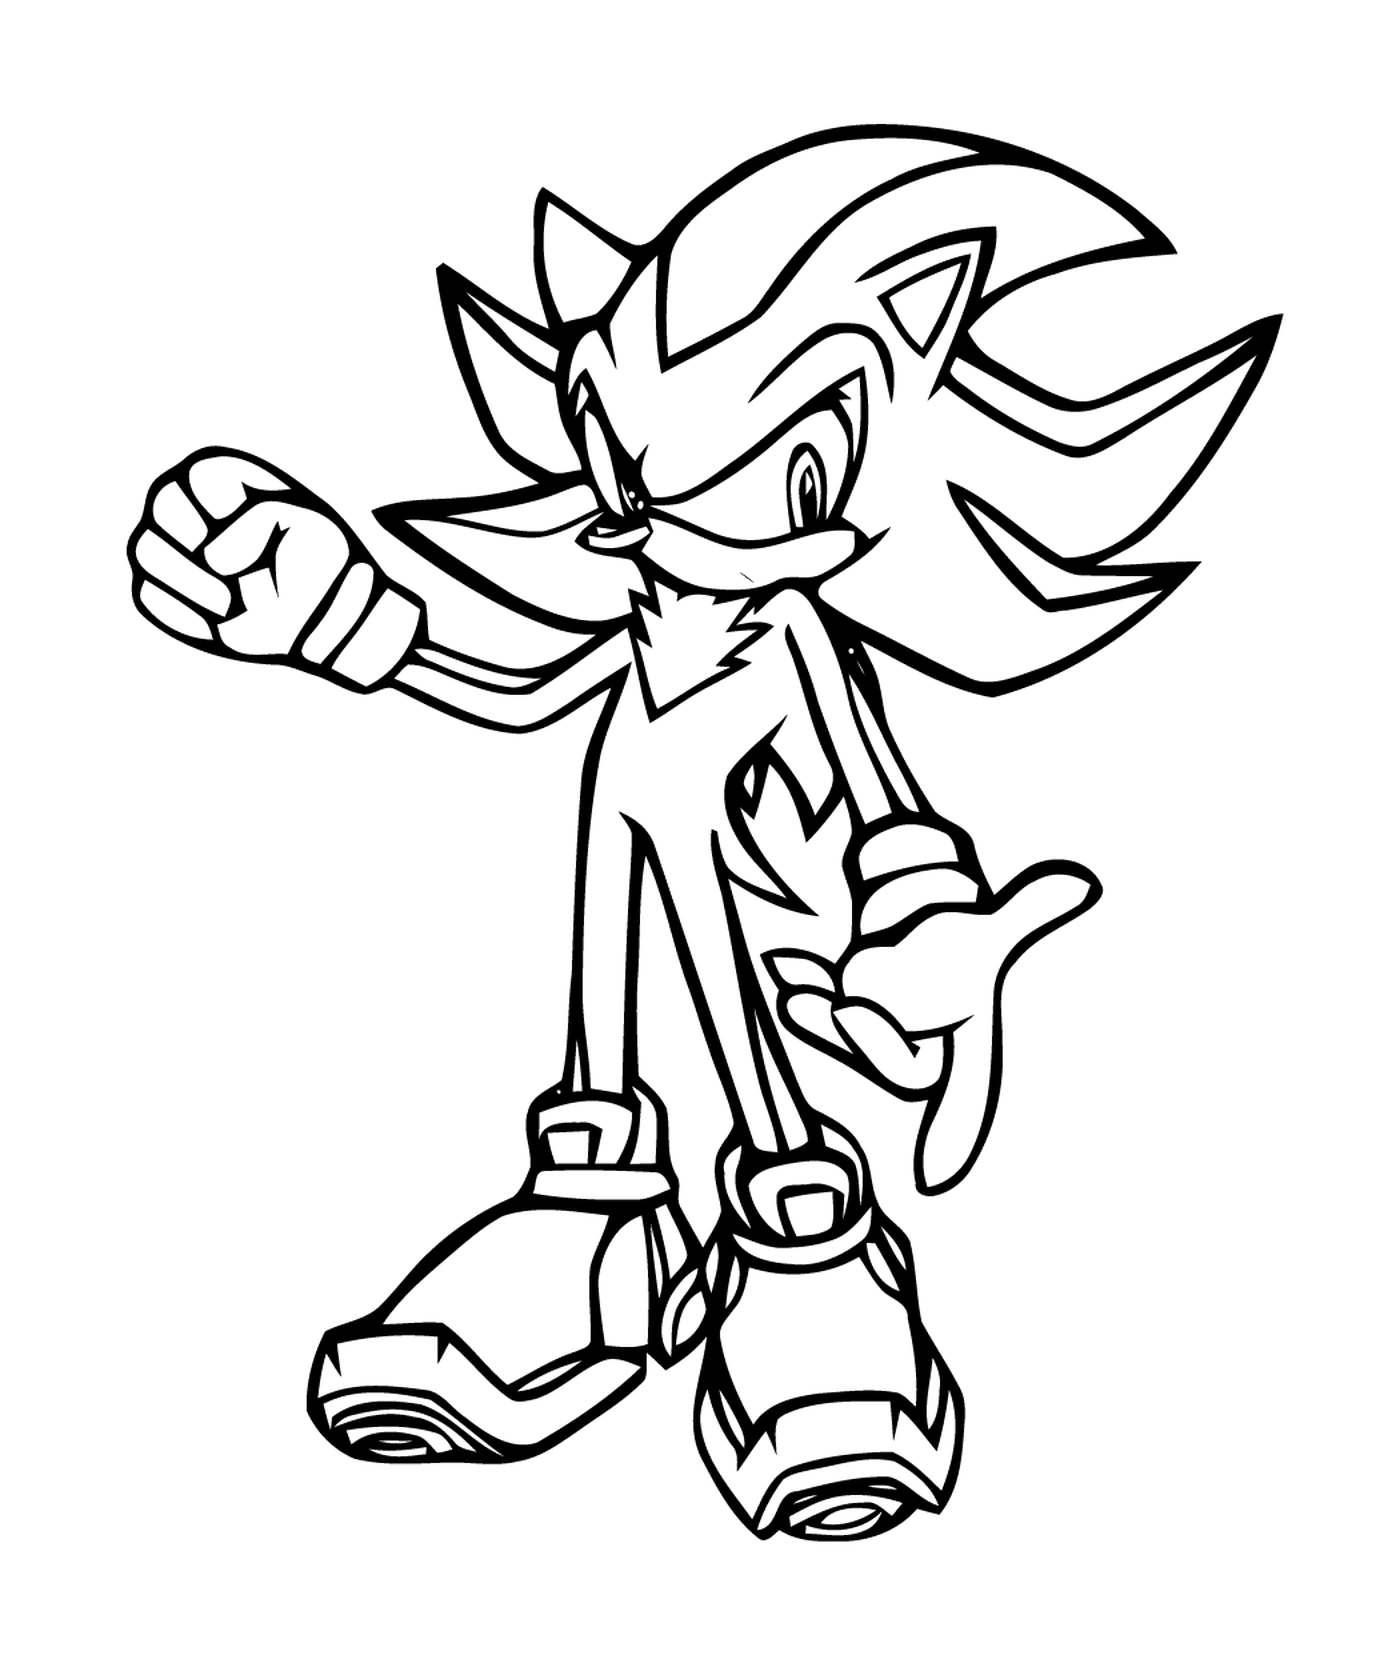  Sonic ágil e rápido 